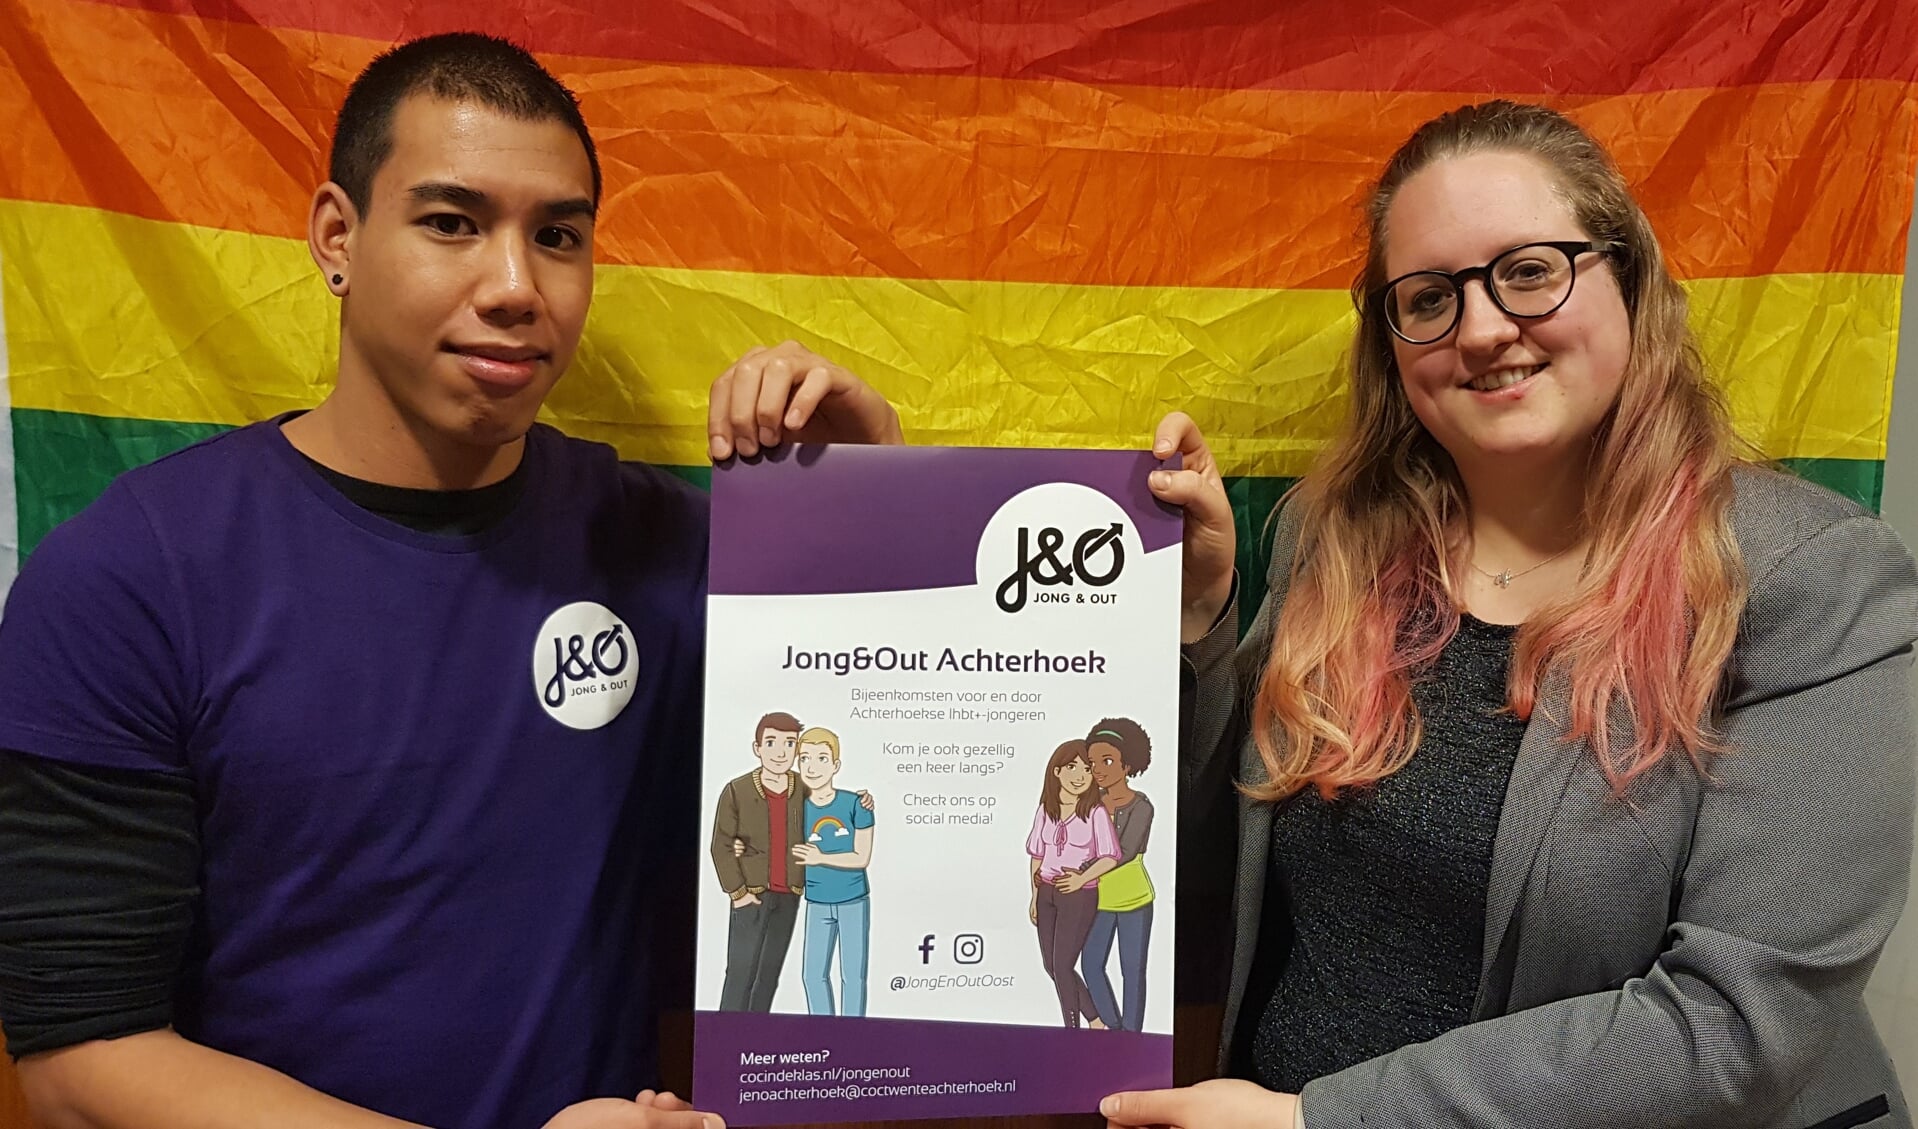 Stijn Kruisselbrink en Maike Penterman voor de regenboogvlag, symbool van de seksuele diversiteit. Foto: Han van de Laar